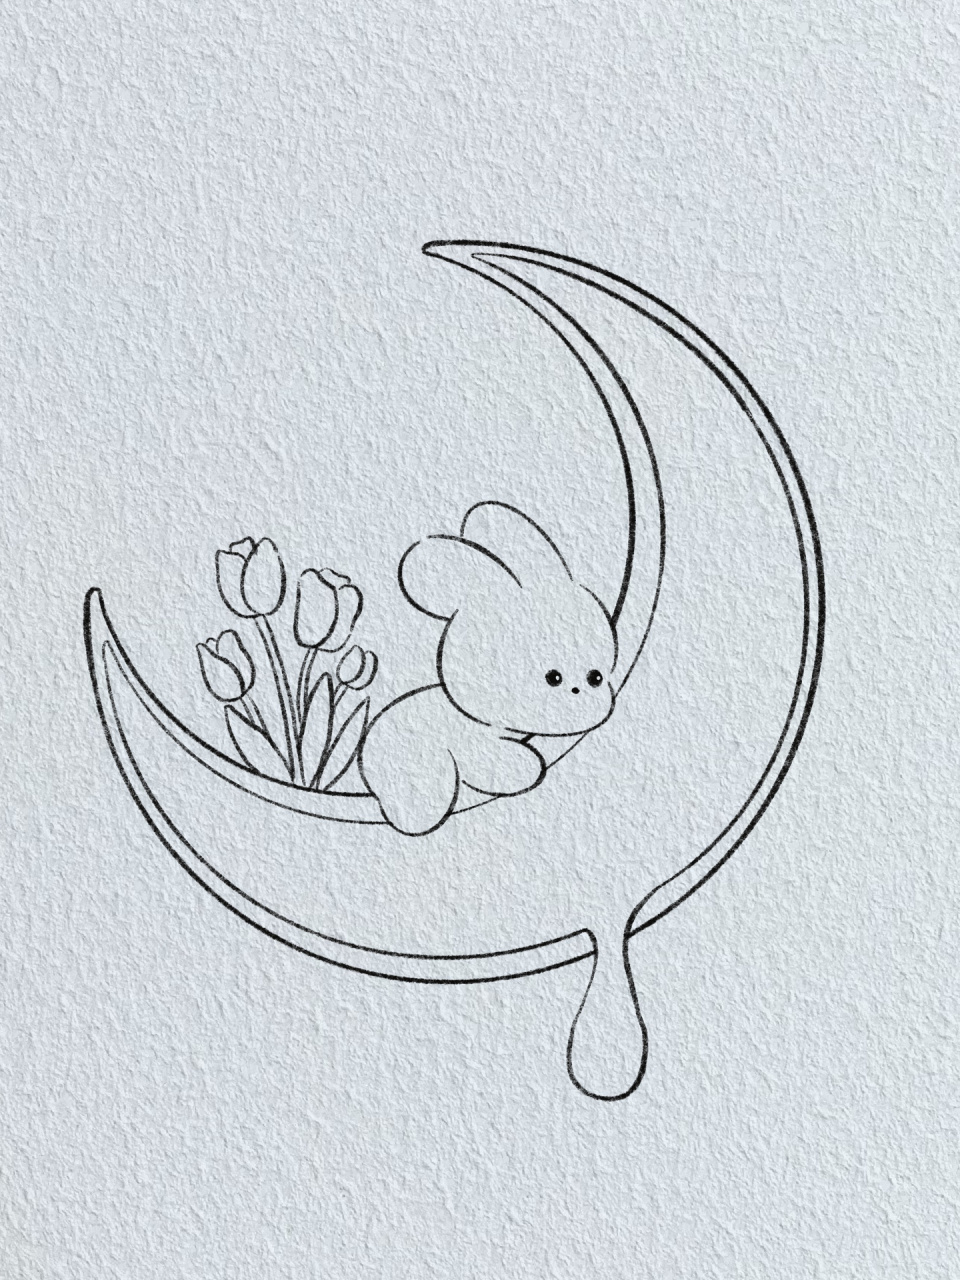 兔子抱月亮图片简笔图片